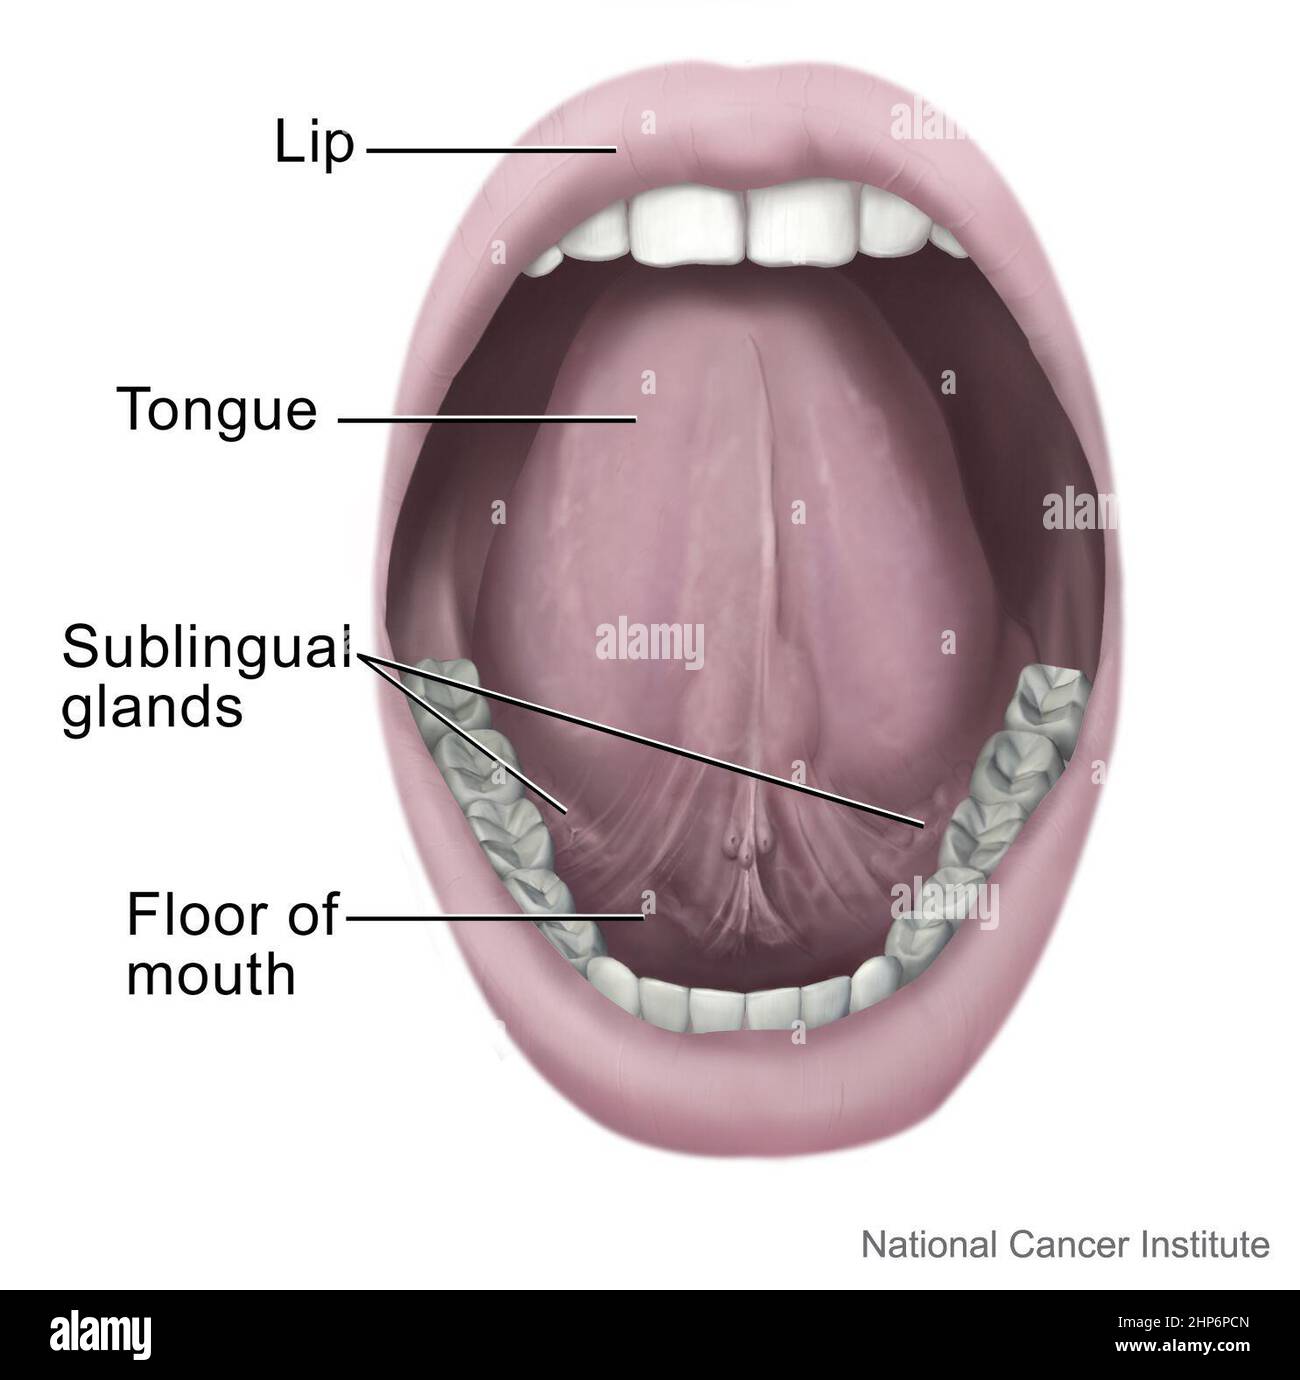 Il lato inferiore della lingua e le strutture vicine (labbro, lingua,  ghiandole salivari, e pavimento della bocca) sono identificati ca. 2003  Foto stock - Alamy